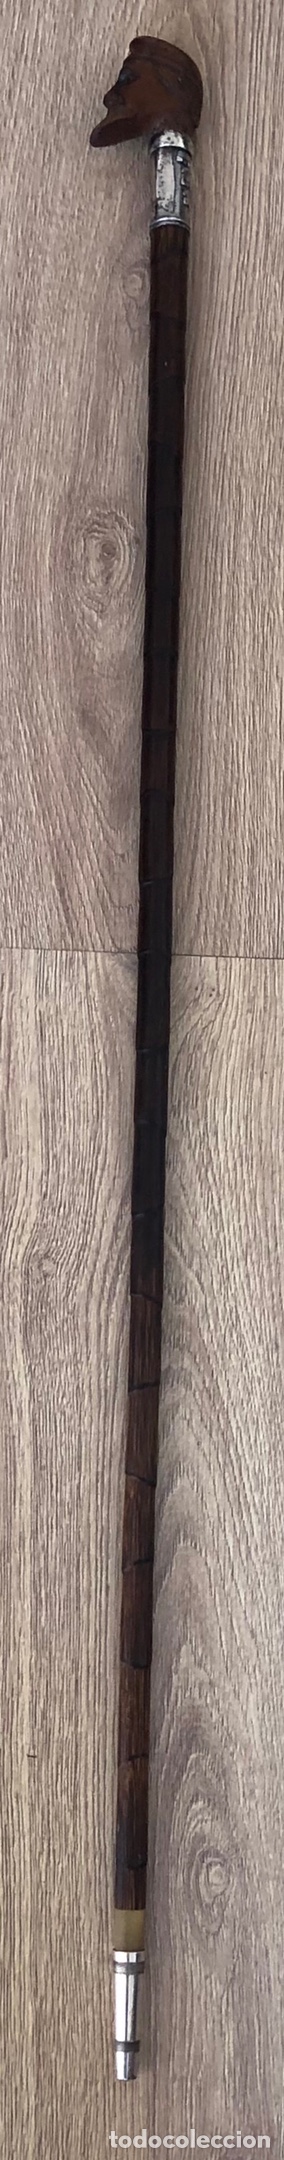 Antigüedades: Magnífico bastón antiguo, con empuñadura en talla de madera, vara de caña, plata, y punta de asta - Foto 3 - 213466631